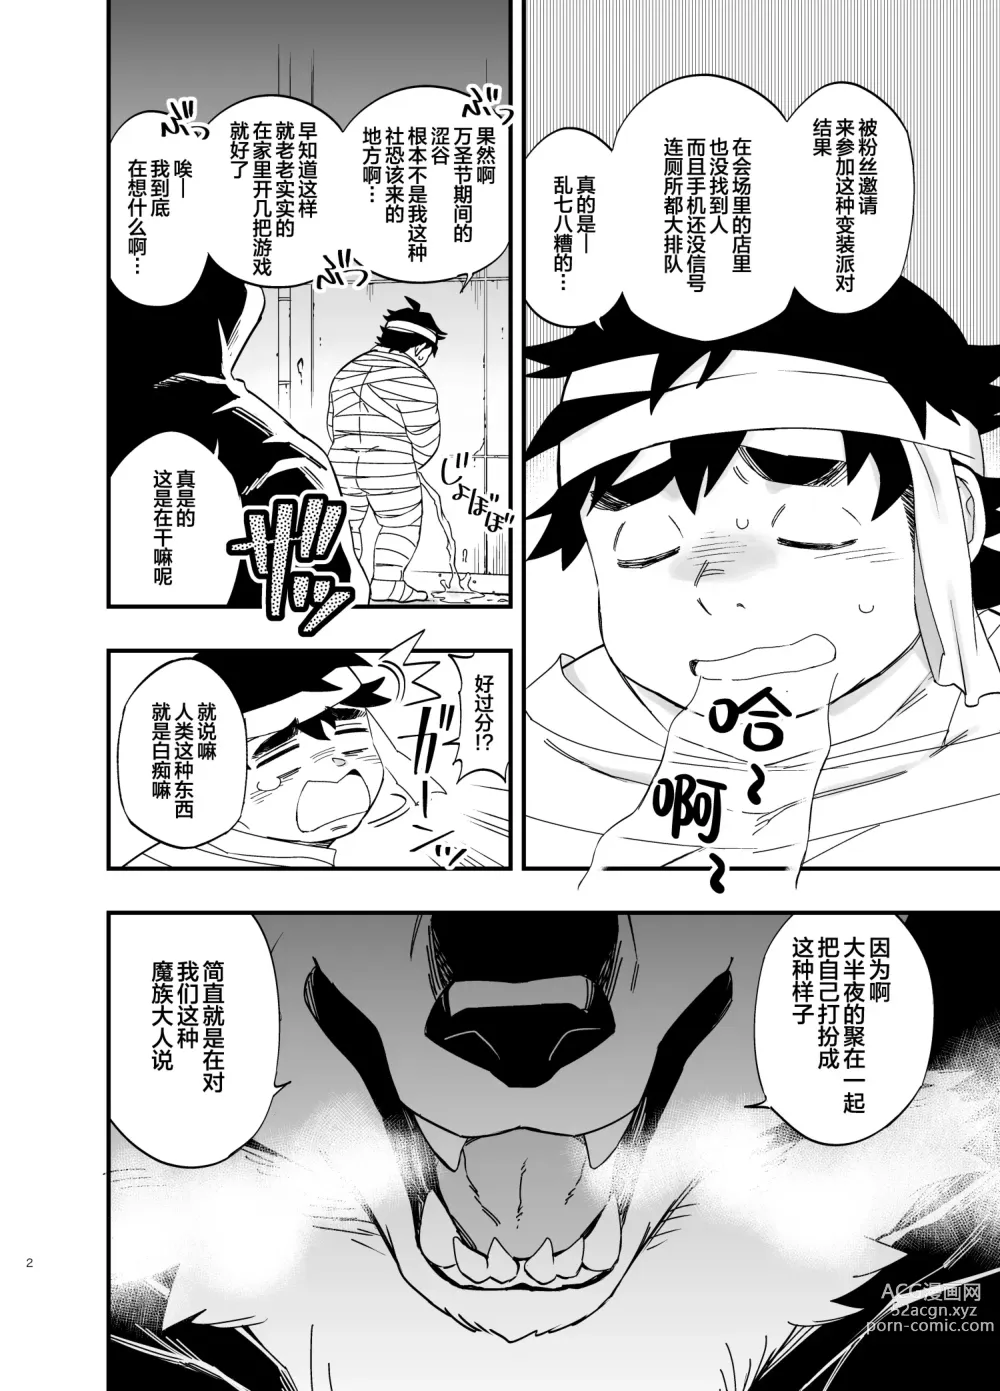 Page 3 of manga オオカミなんかこわくない！